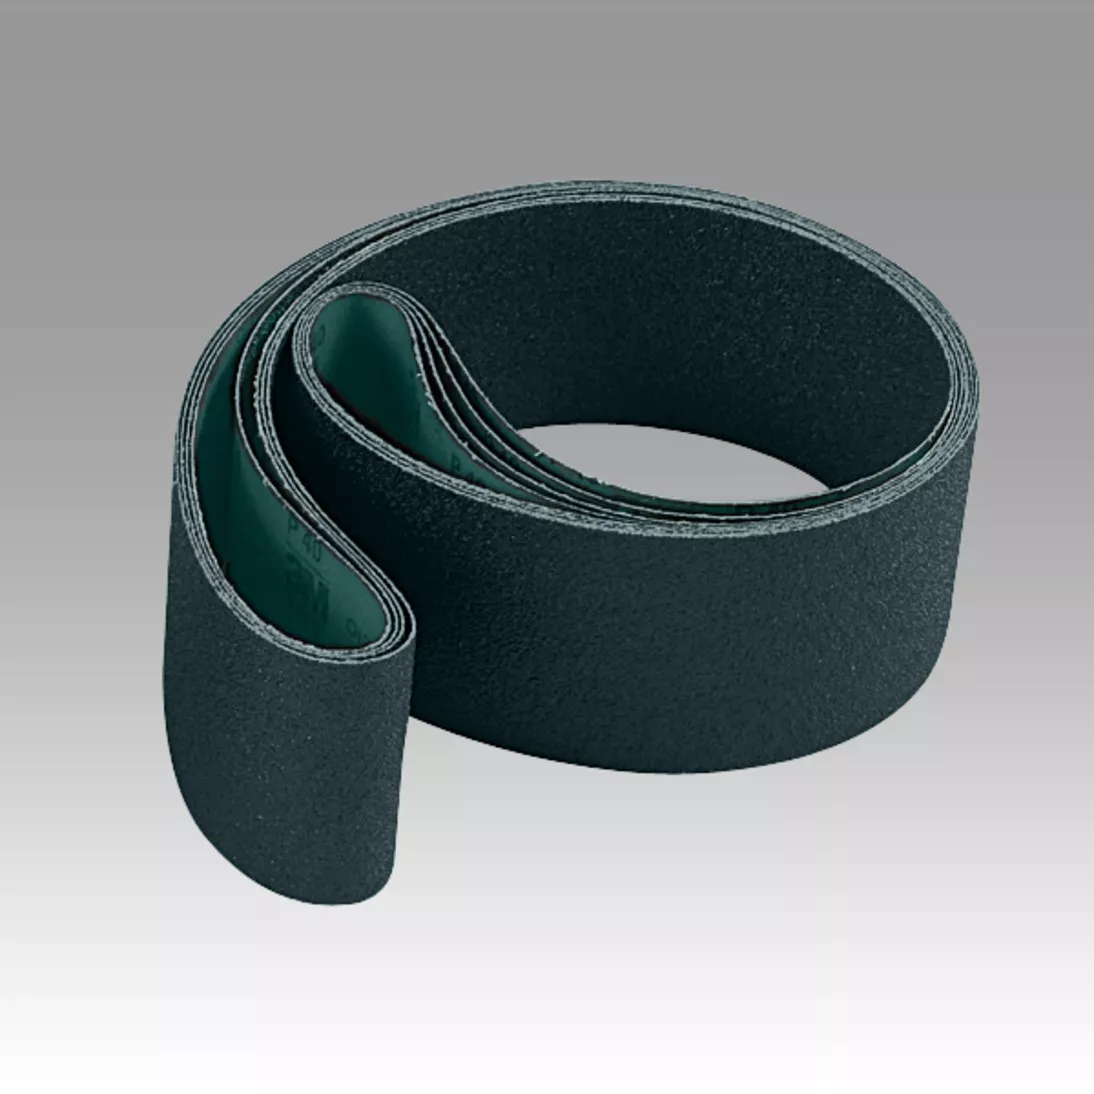 Scotch-Brite™ Surface Conditioning Low Stretch Belt, SC-BL, SiC Medium,
3 in x 132 in, 5 ea/Case